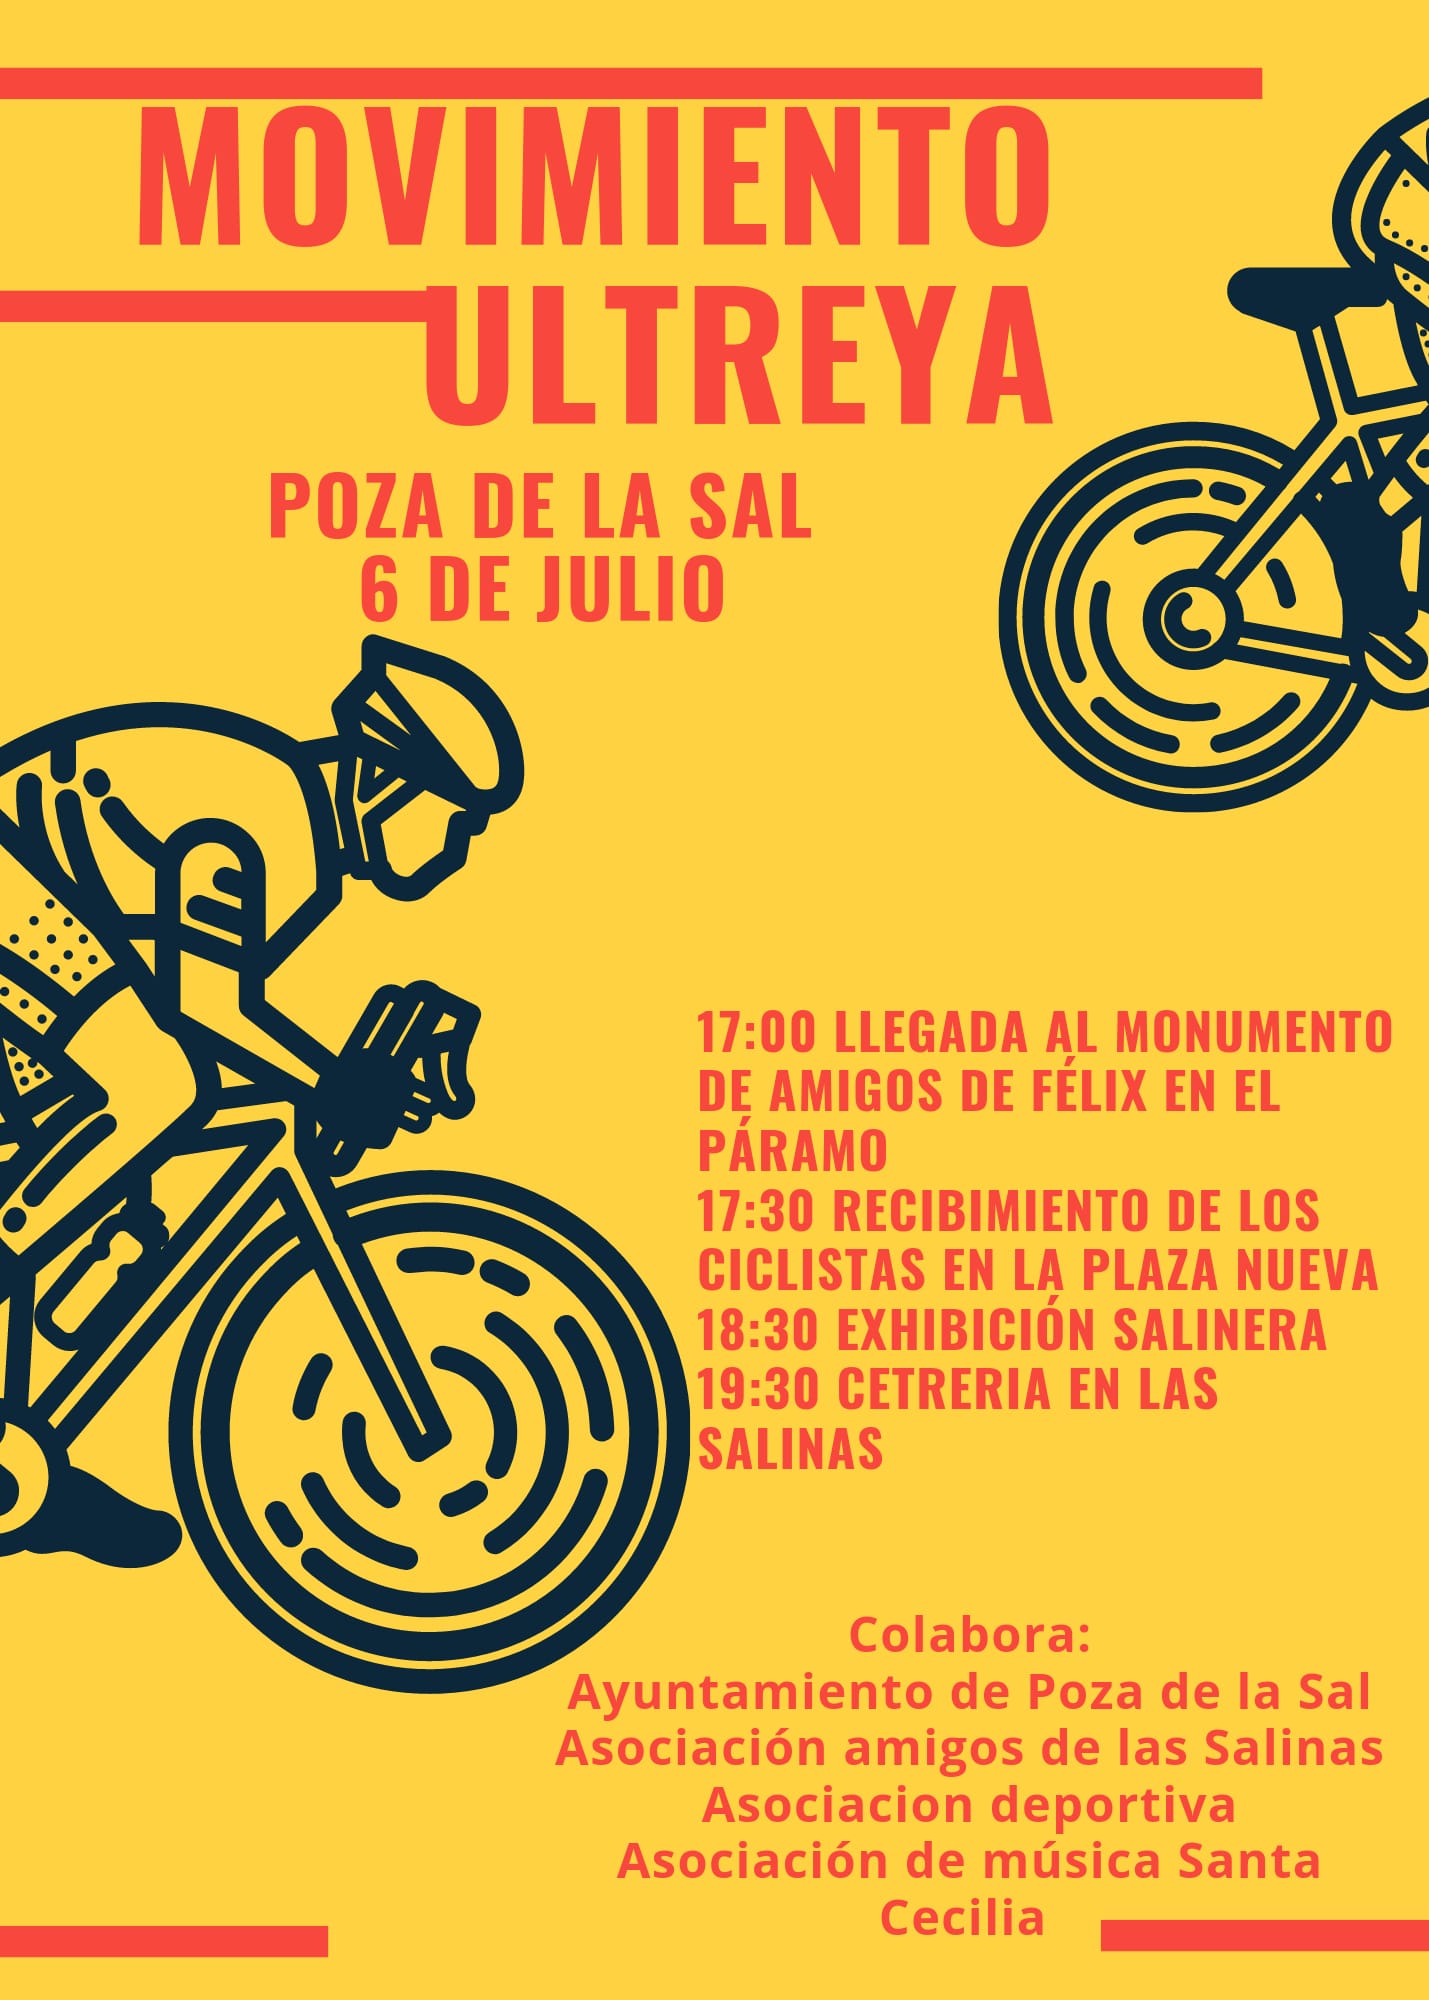 Exhibición salinera para la bienvenida al movimiento Ultreya